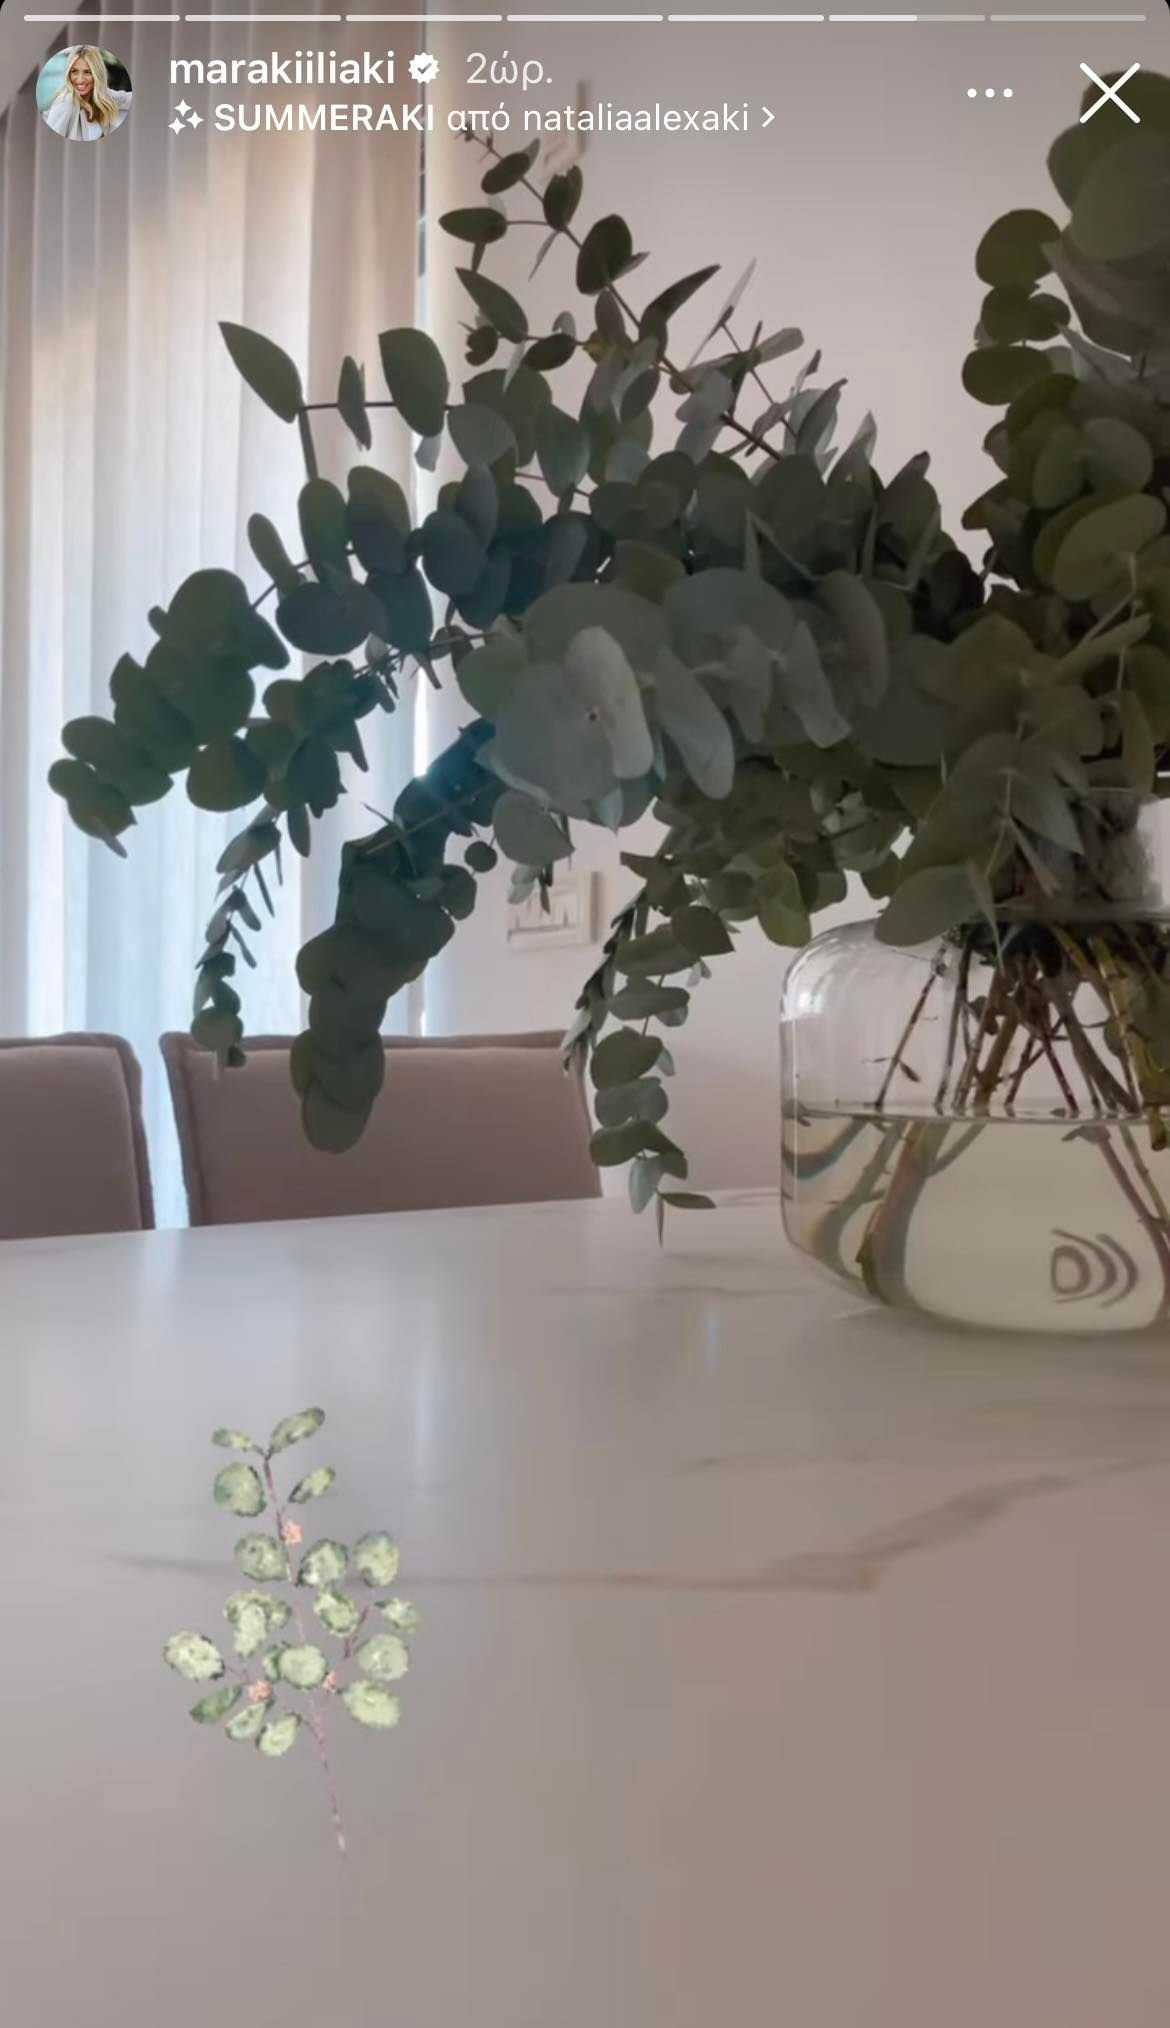 Μαρία Ηλιάκη: Ο τρόπος που διακόσμησε τη μαρμάρινη τραπεζαρία της με τα υπέροχα φυτά, εντυπωσιάζει!